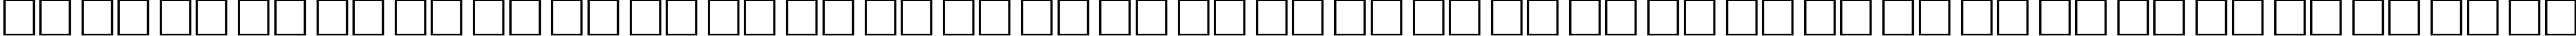 Пример написания русского алфавита шрифтом School Plain:001.00145n